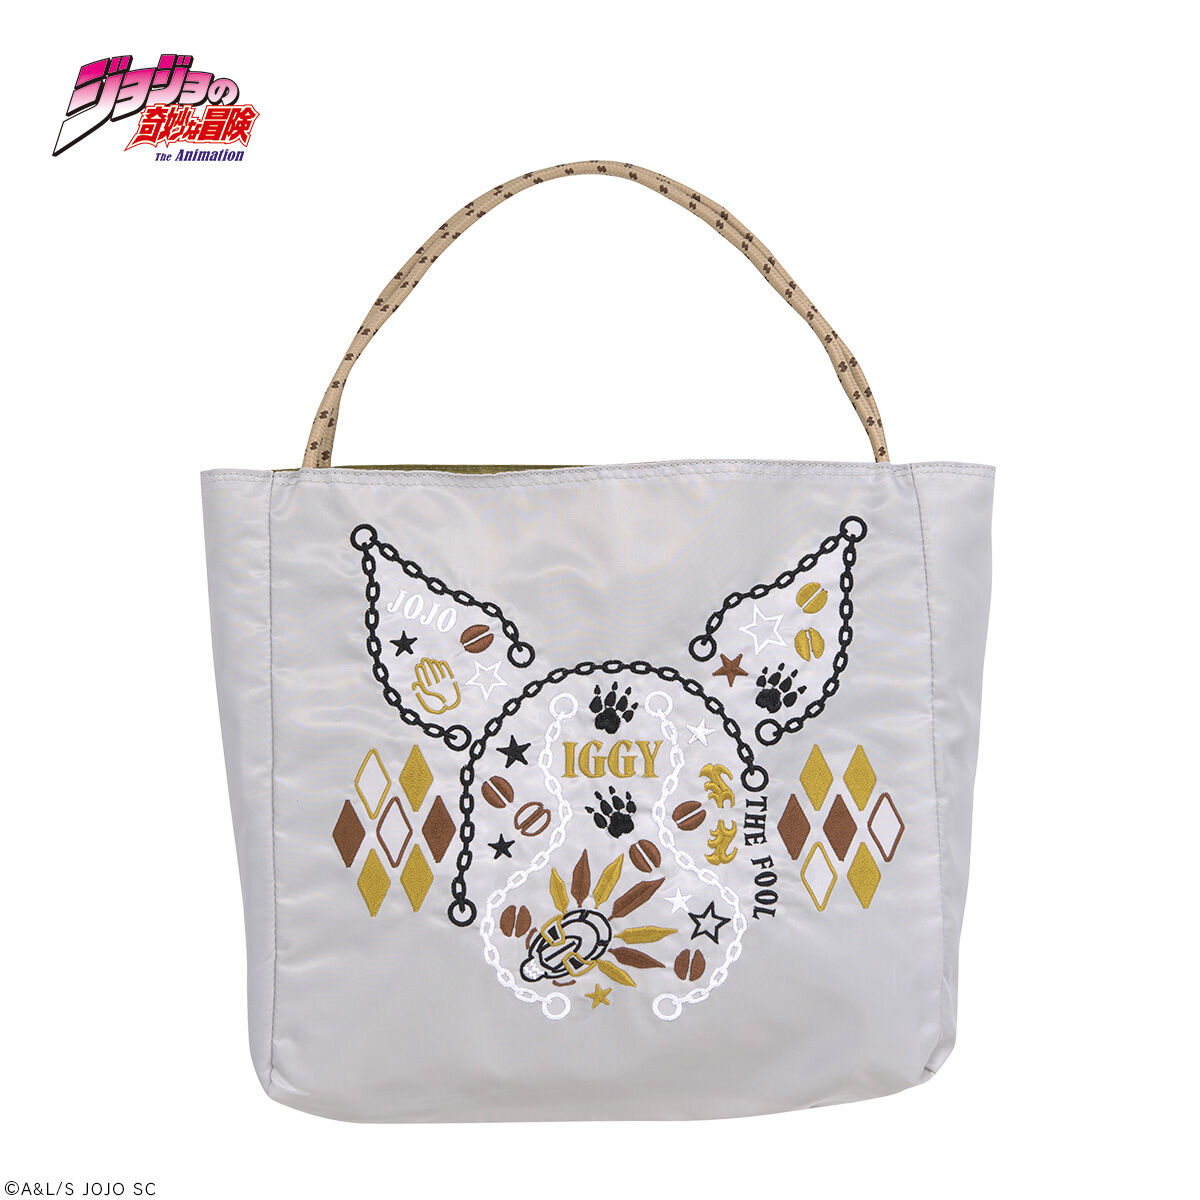 7,200円オノフィーフリー × ジョジョ イギー 刺繍バッグ